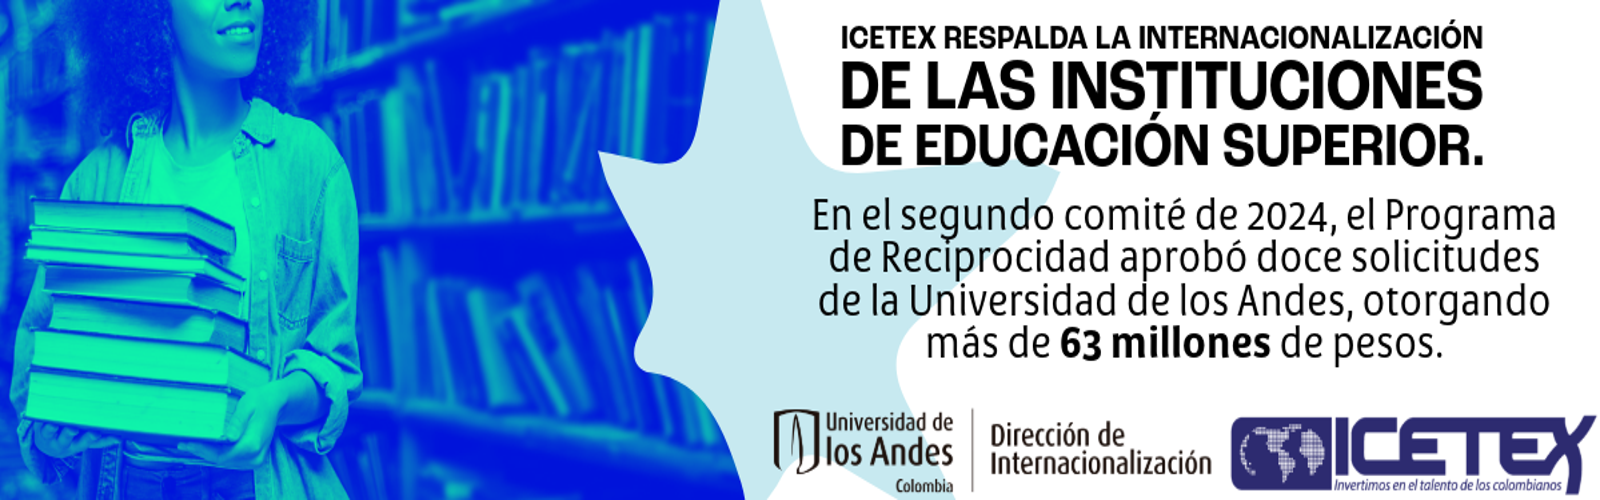 ICETEX respalda la internacionalización de las instituciones de educación superior